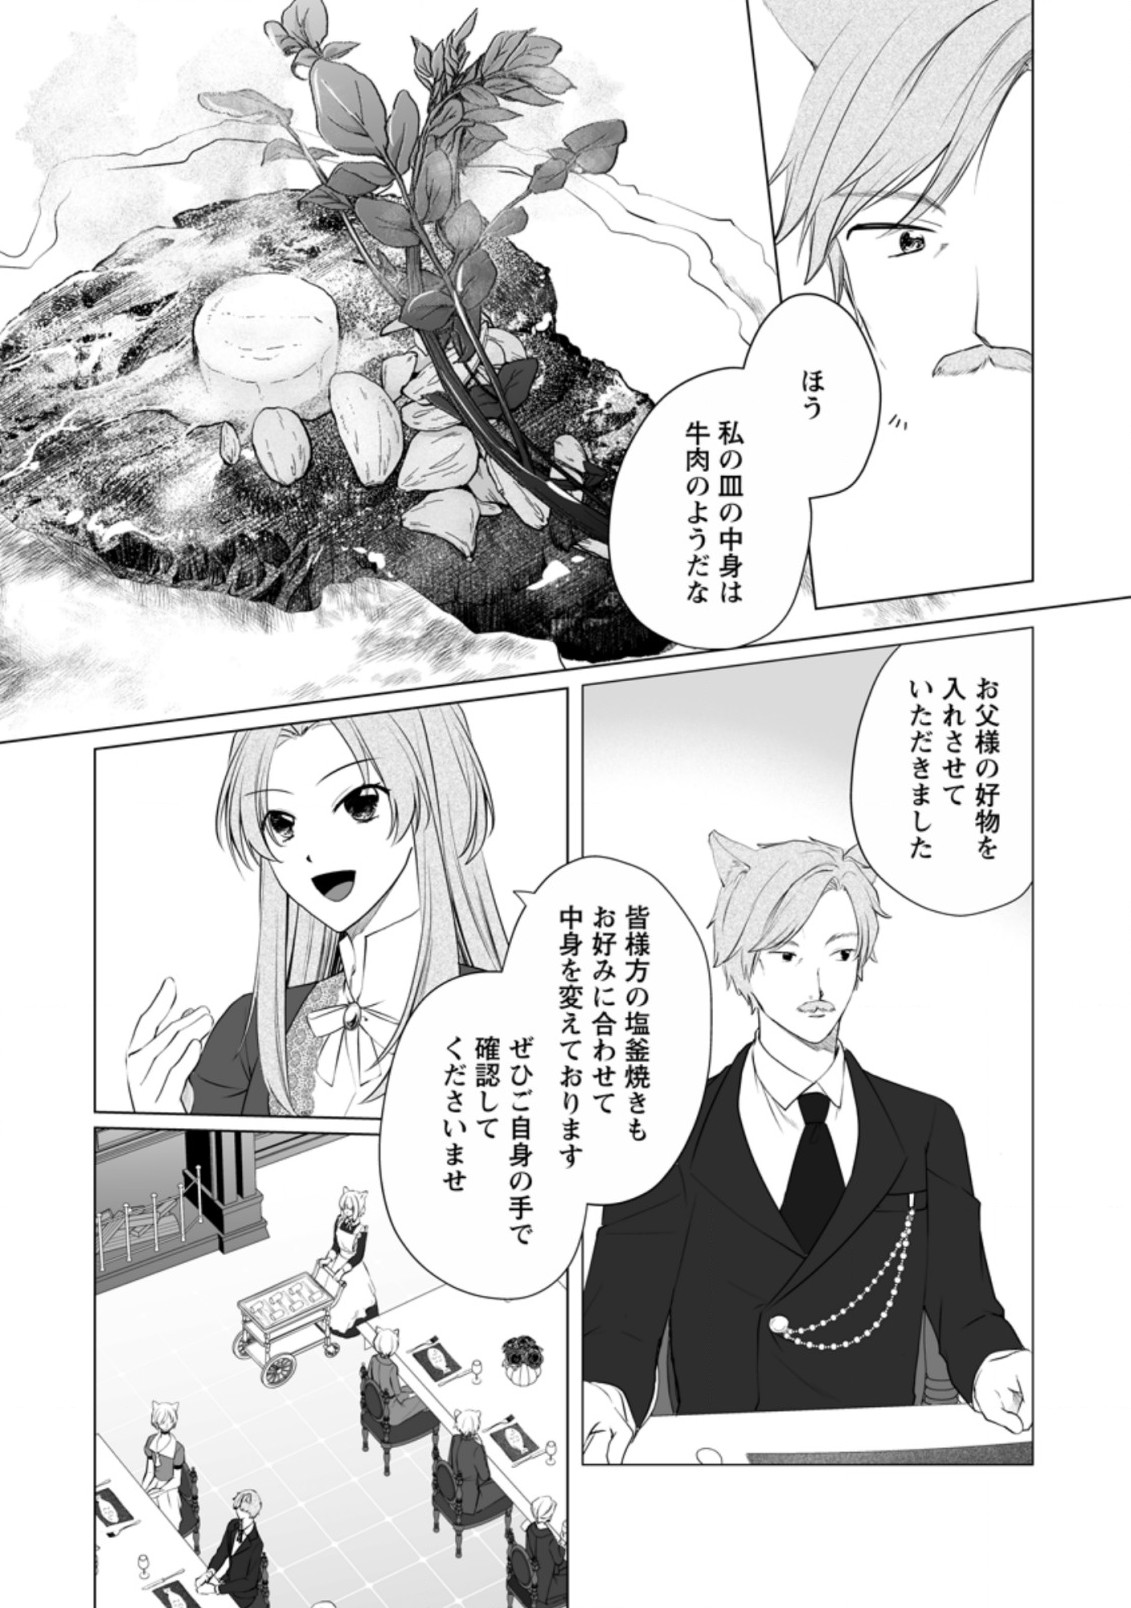 Tenseisaki de Suterareta no de, Mofumofu-tachi to Oryouri shimasu: Okazari Ouhi wa My Pace ni Saikyou desu - Chapter 17 - Page 13